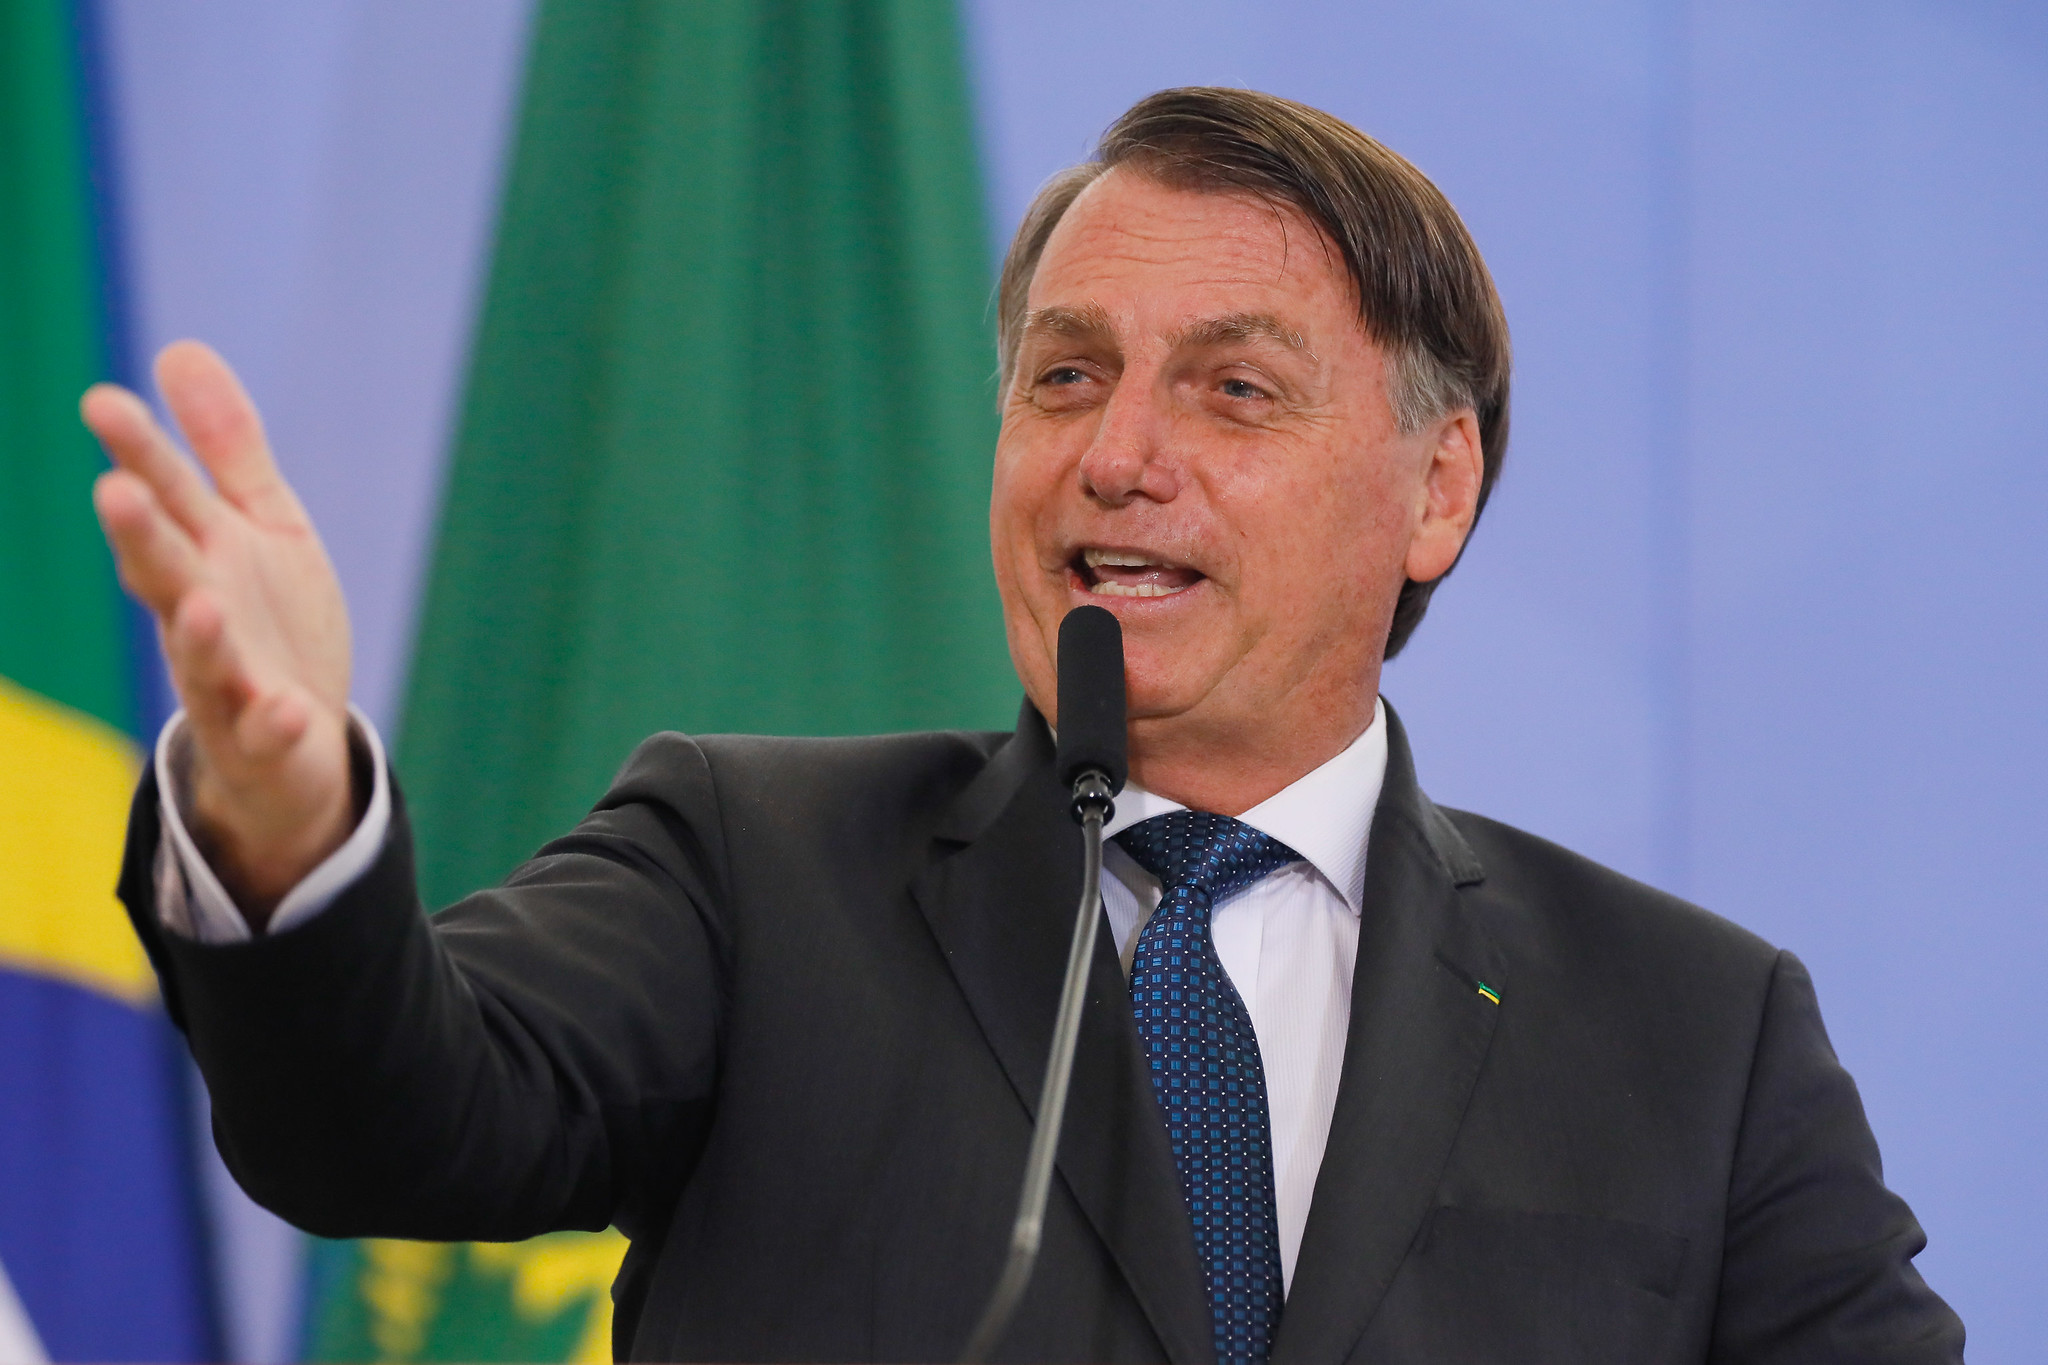 Datafolha: Reprovação ao governo Bolsonaro cai de 53% para 46% - Focus.jor  | O que importa primeiro